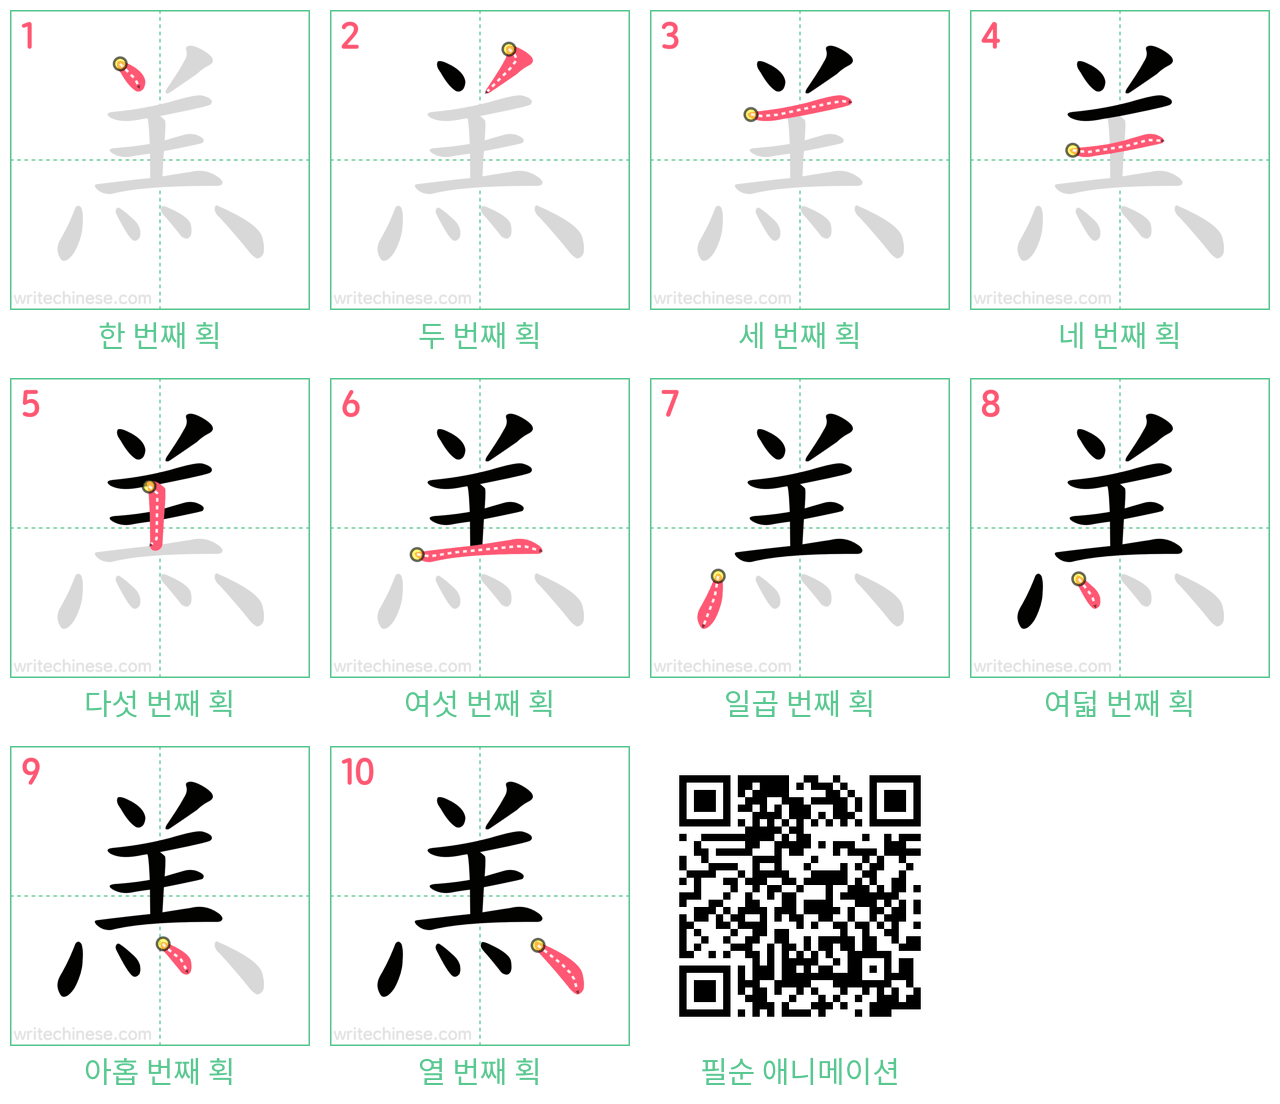 羔 step-by-step stroke order diagrams